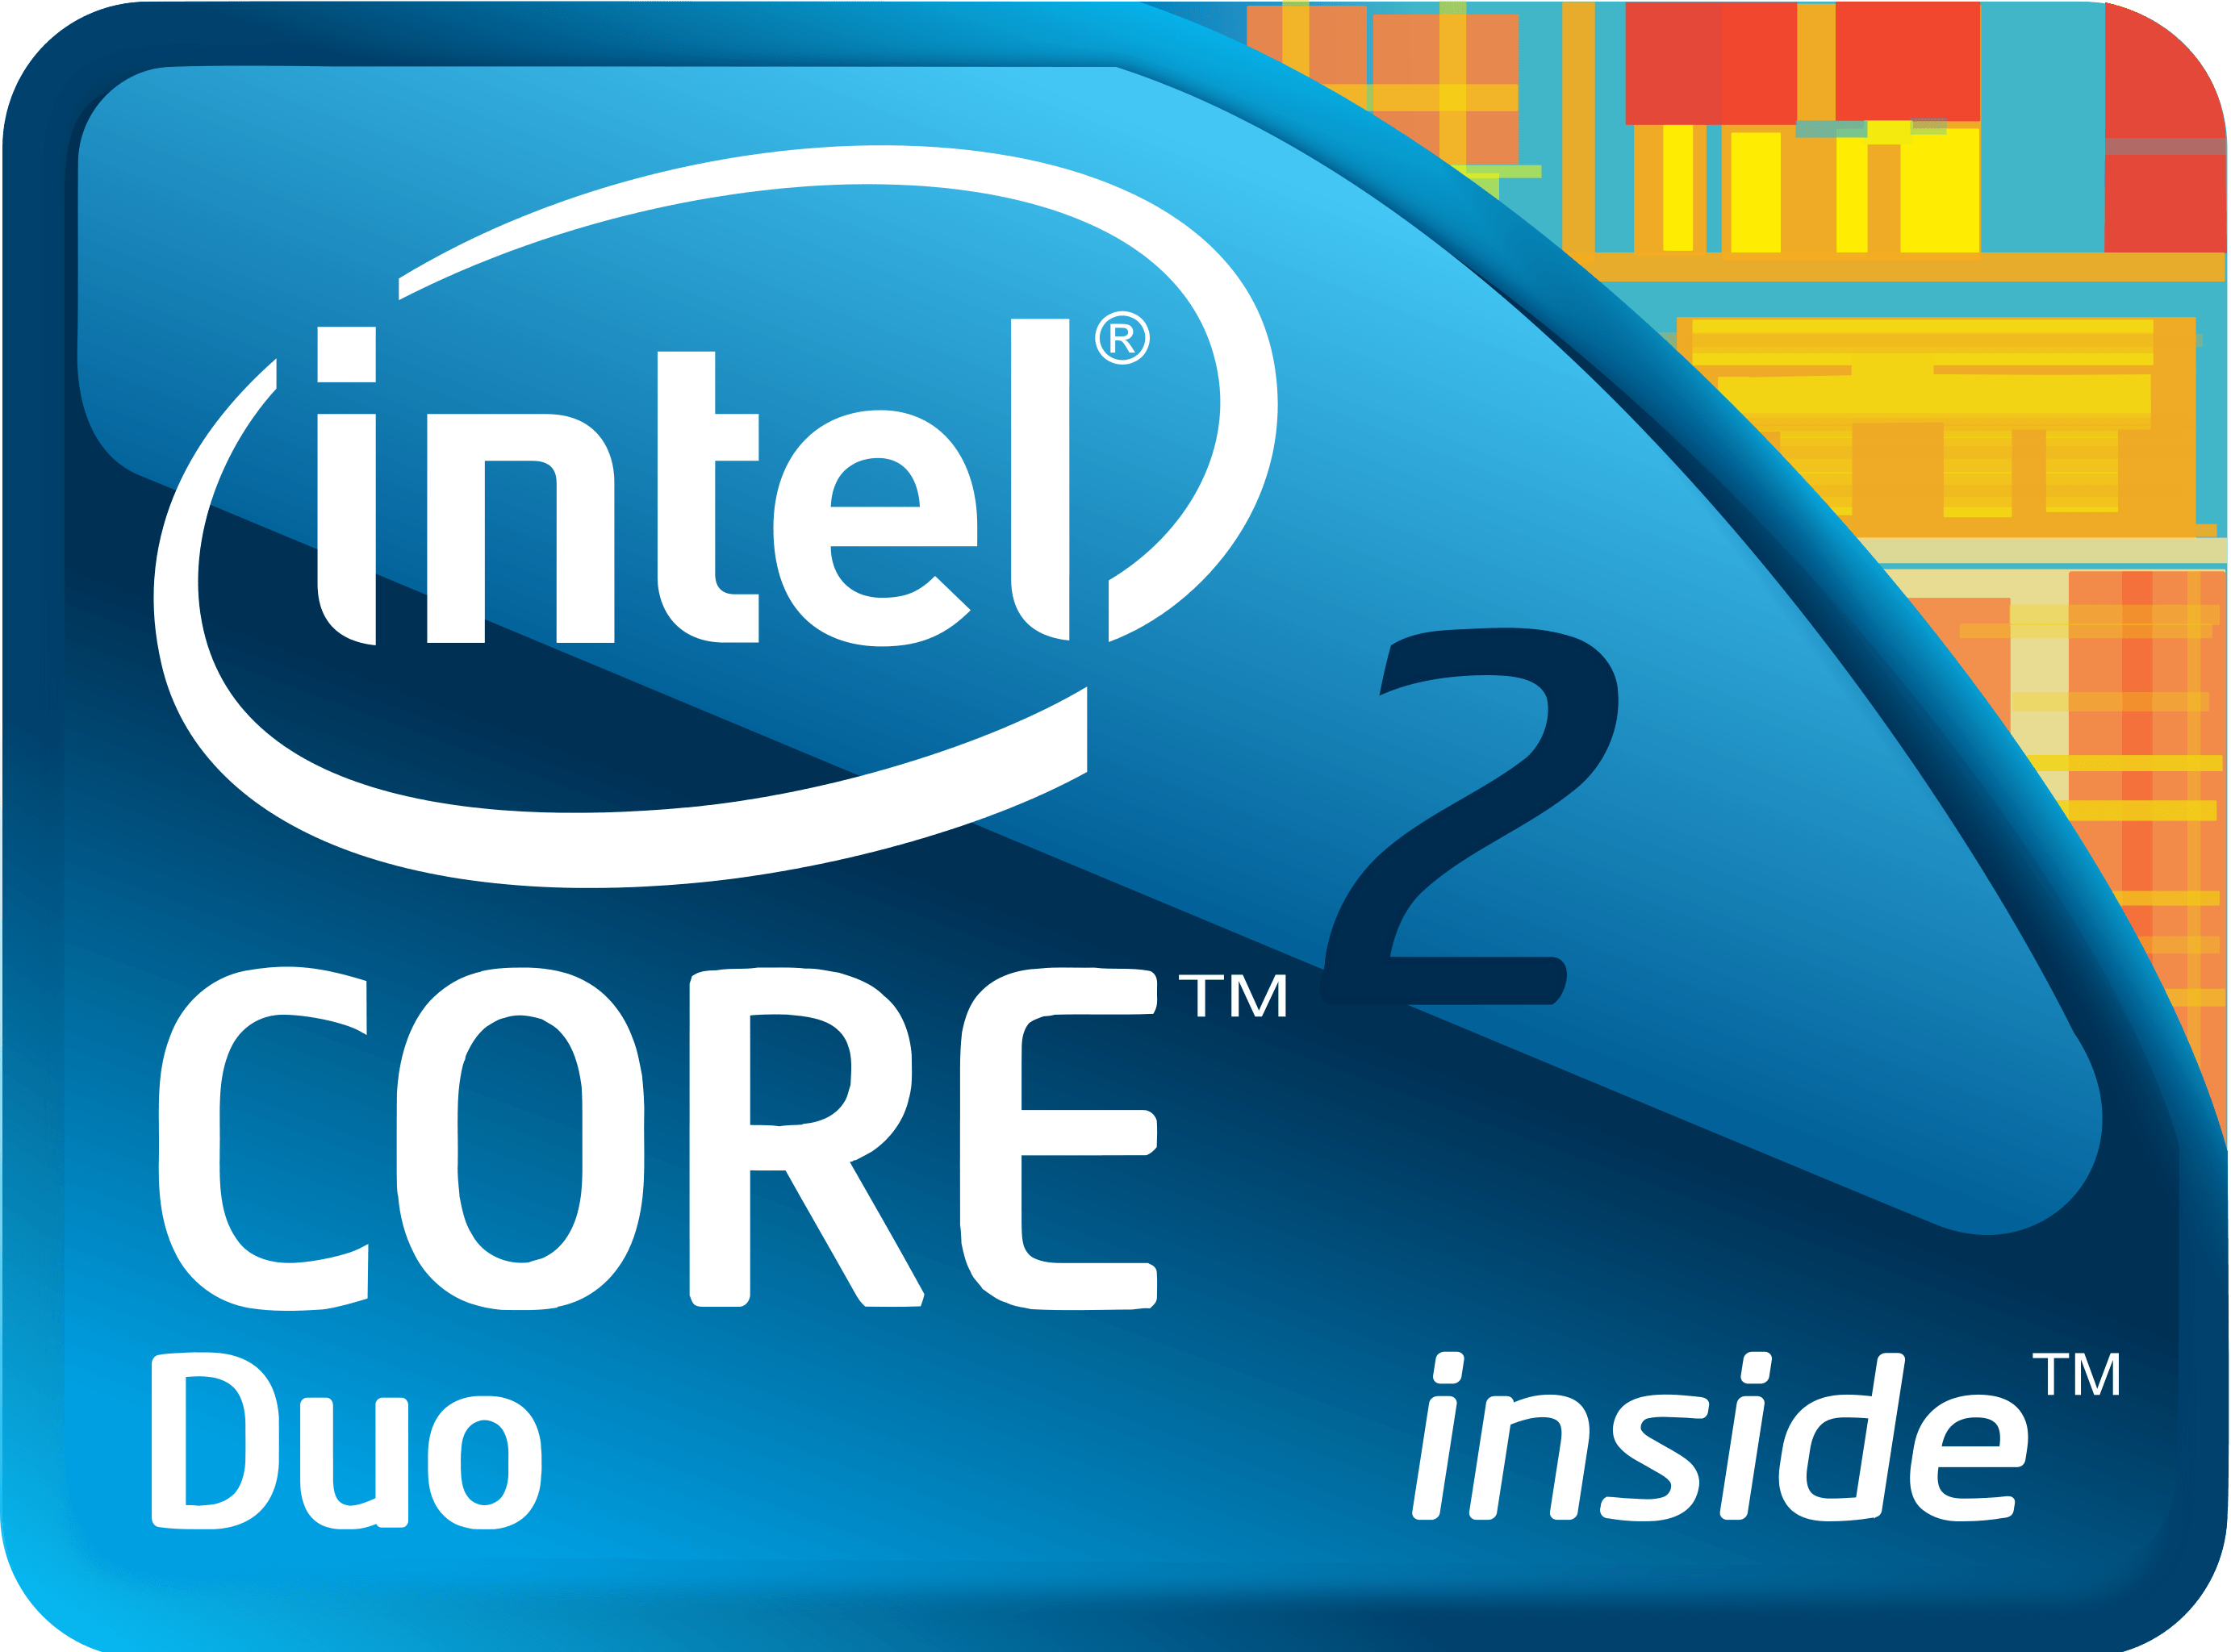 Intel Core 2 Duo Logo - Image - Intel Core 2 Duo logo.png | Logopedia | FANDOM powered by Wikia